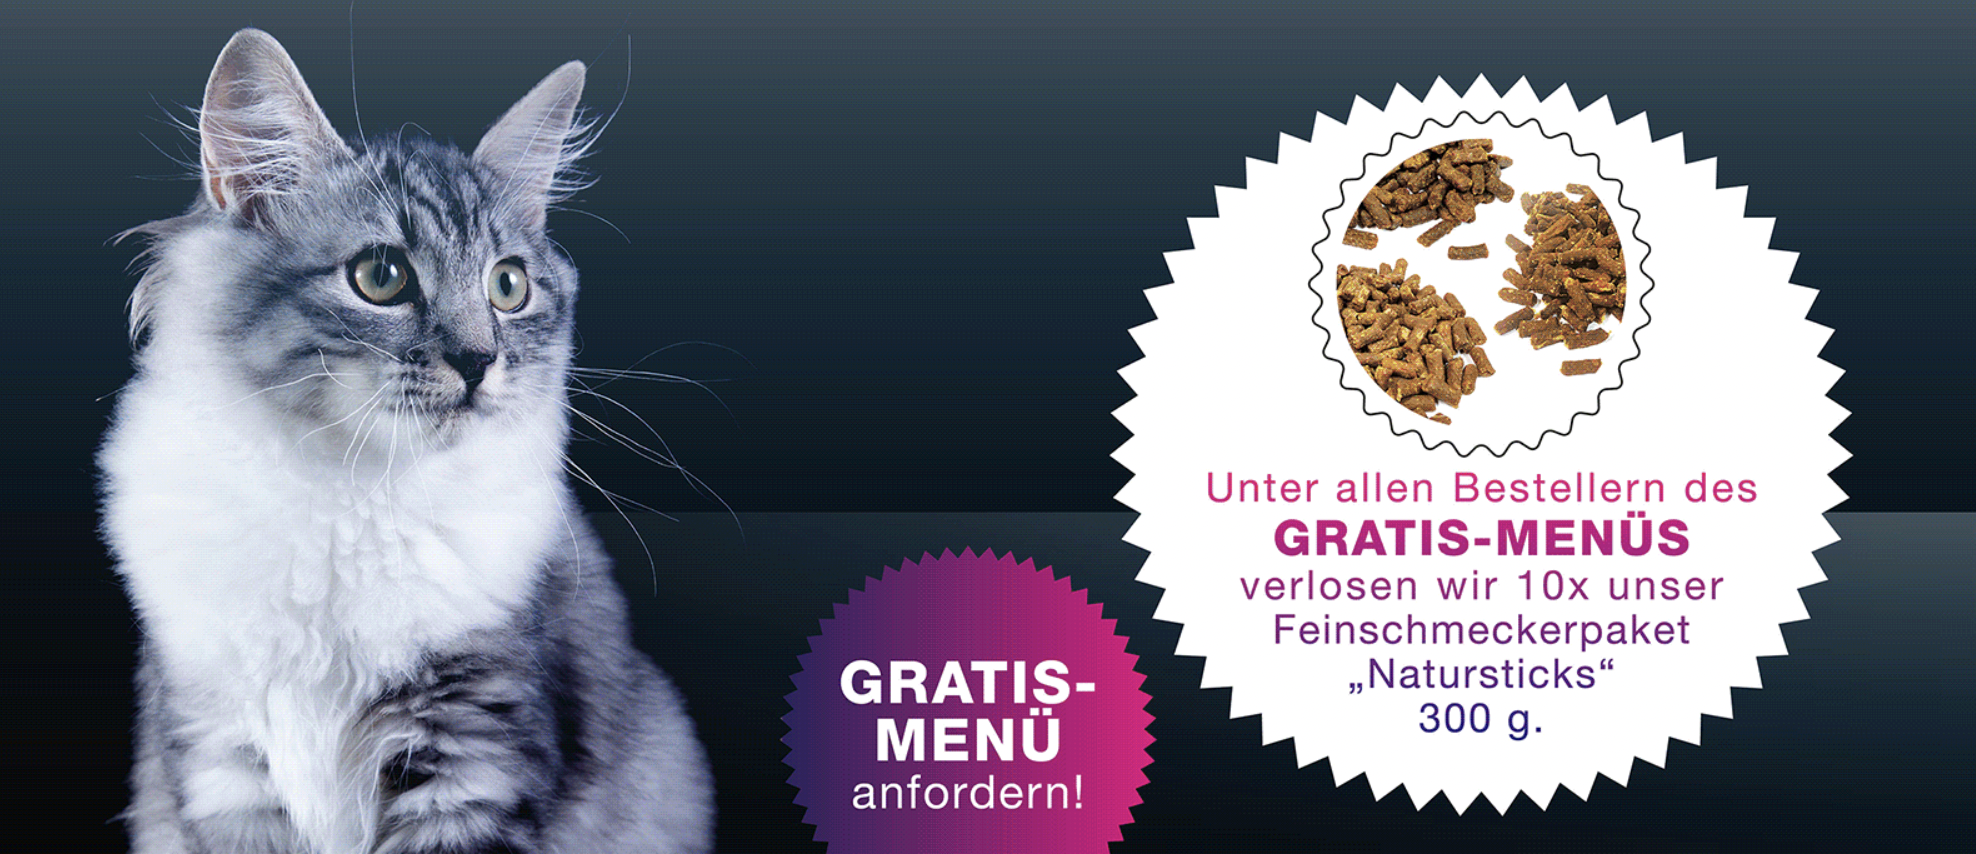 dinner for cats futterprobe kostenlos galerie sparpfoten.de